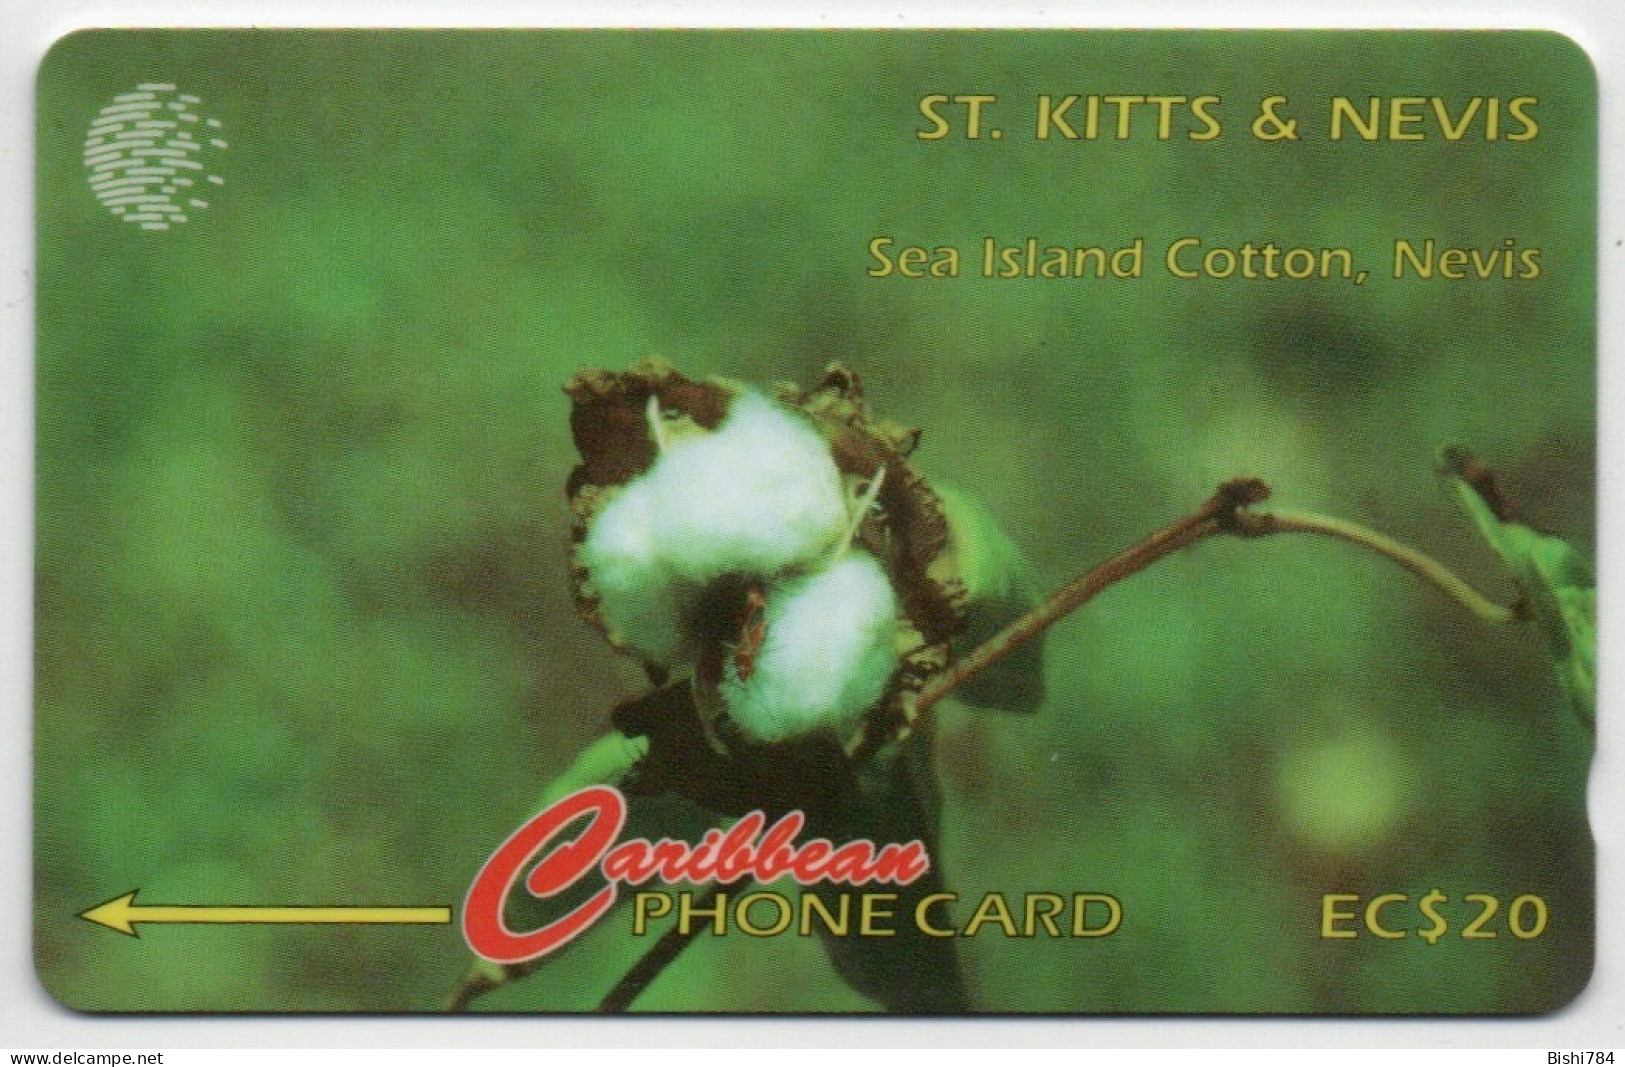 St. Kitts & Nevis - Sea Island Cotton - 77CSKA - Saint Kitts & Nevis